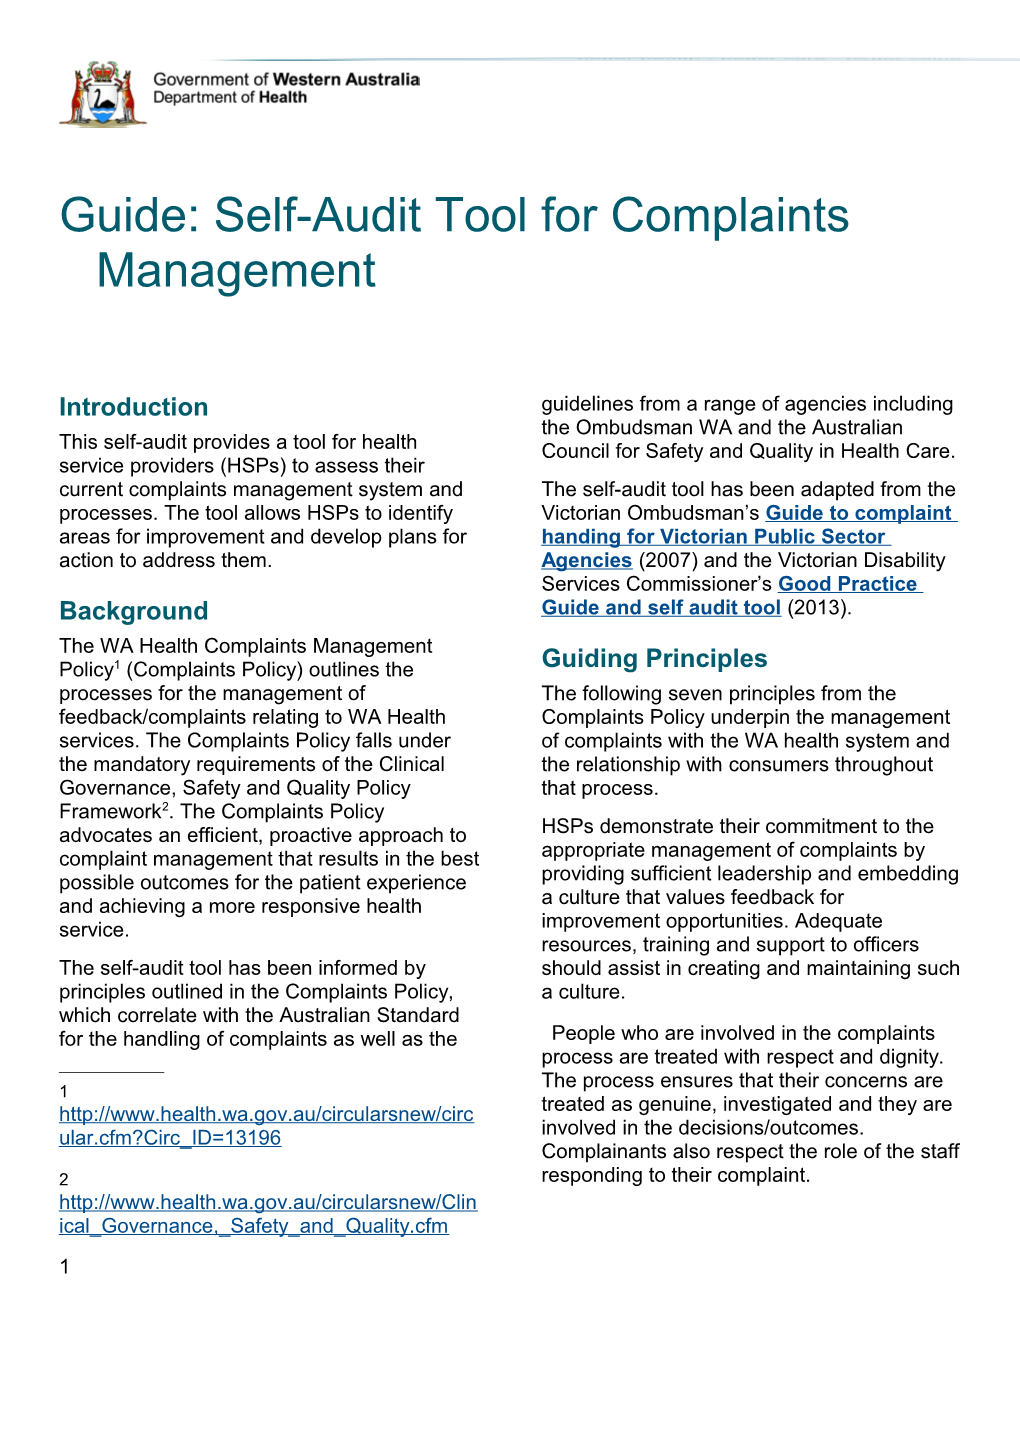 Self-Audit Tool: Complaints Management